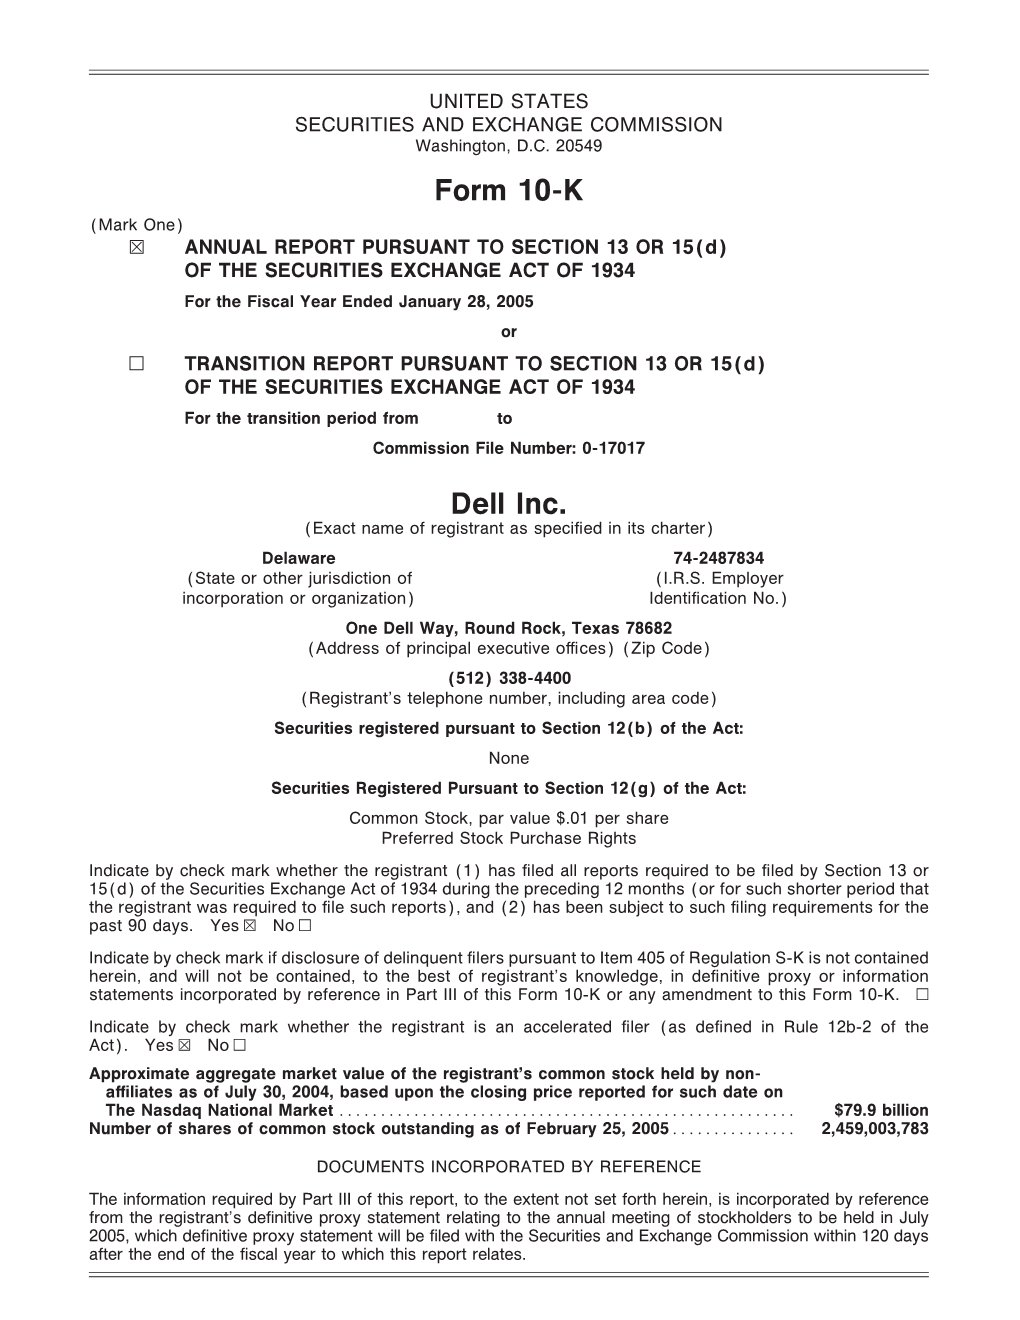 Form 10-K Dell Inc